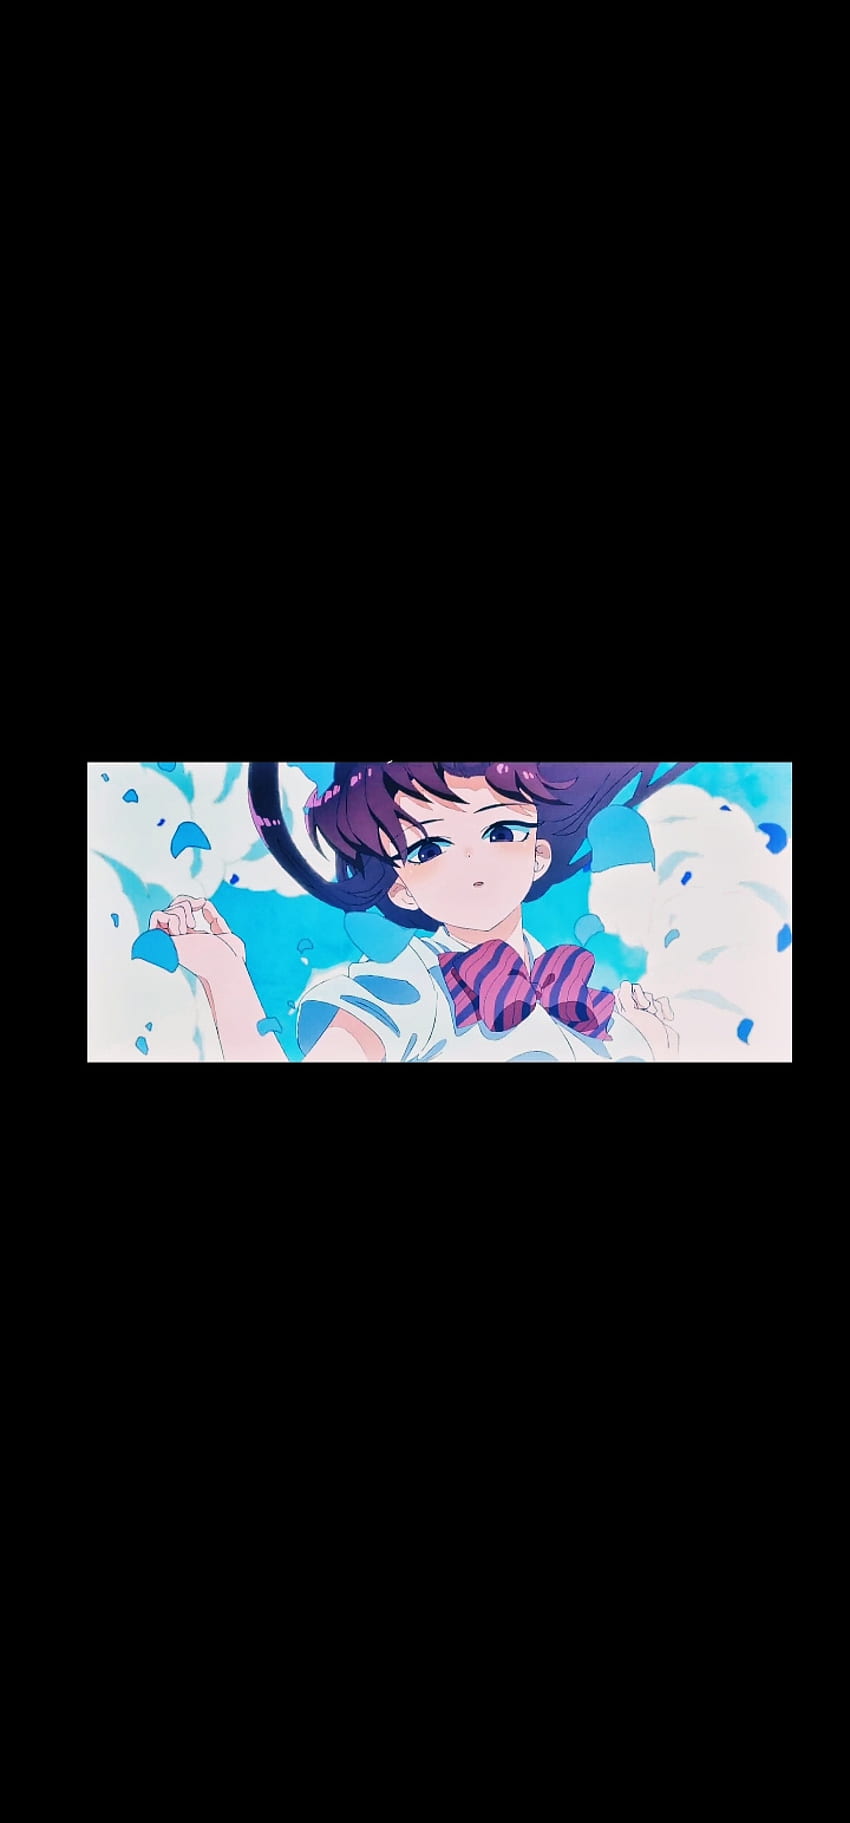 Komi não consegue se comunicar, komi shouko, azul elétrico, komi san, cena de anime Papel de parede de celular HD